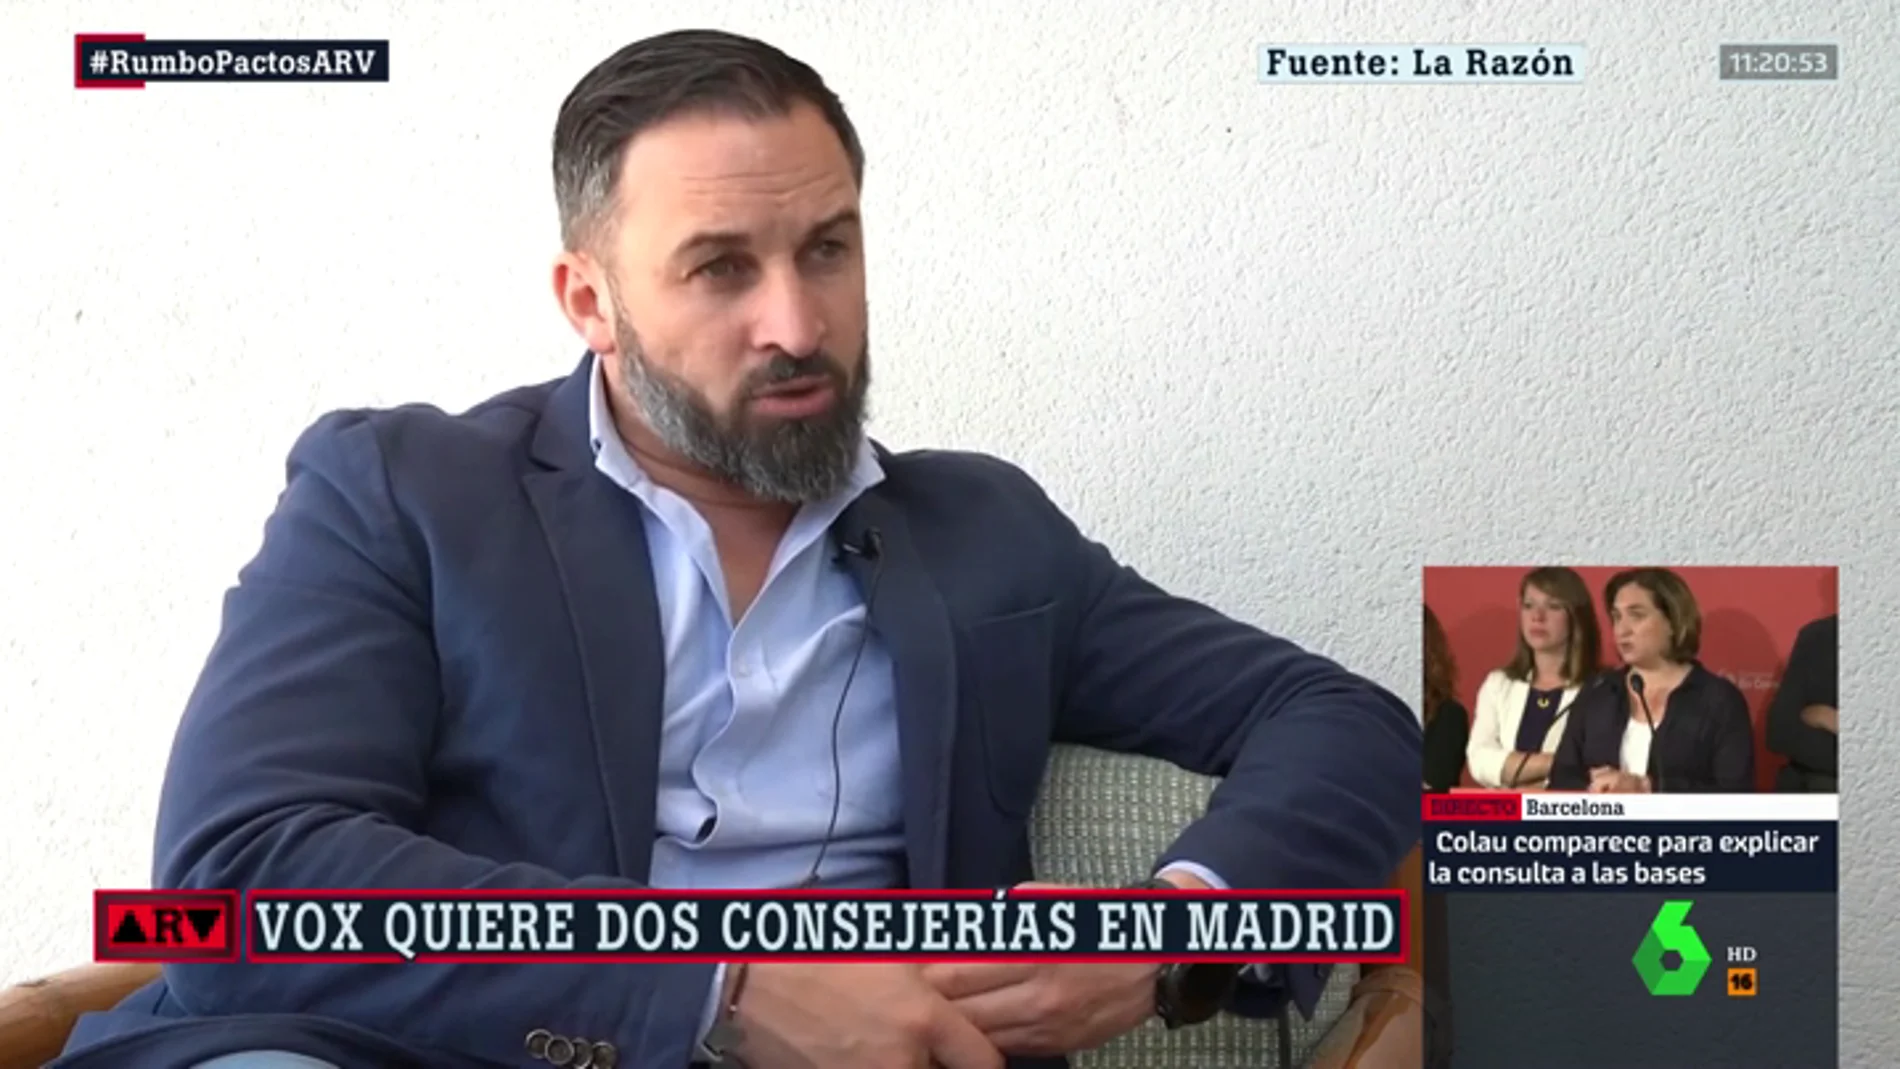 Santiago Abascal presiona a PP y Ciudadanos en Madrid: "Si tienen cuatro consejerías, Vox debe tener dos"